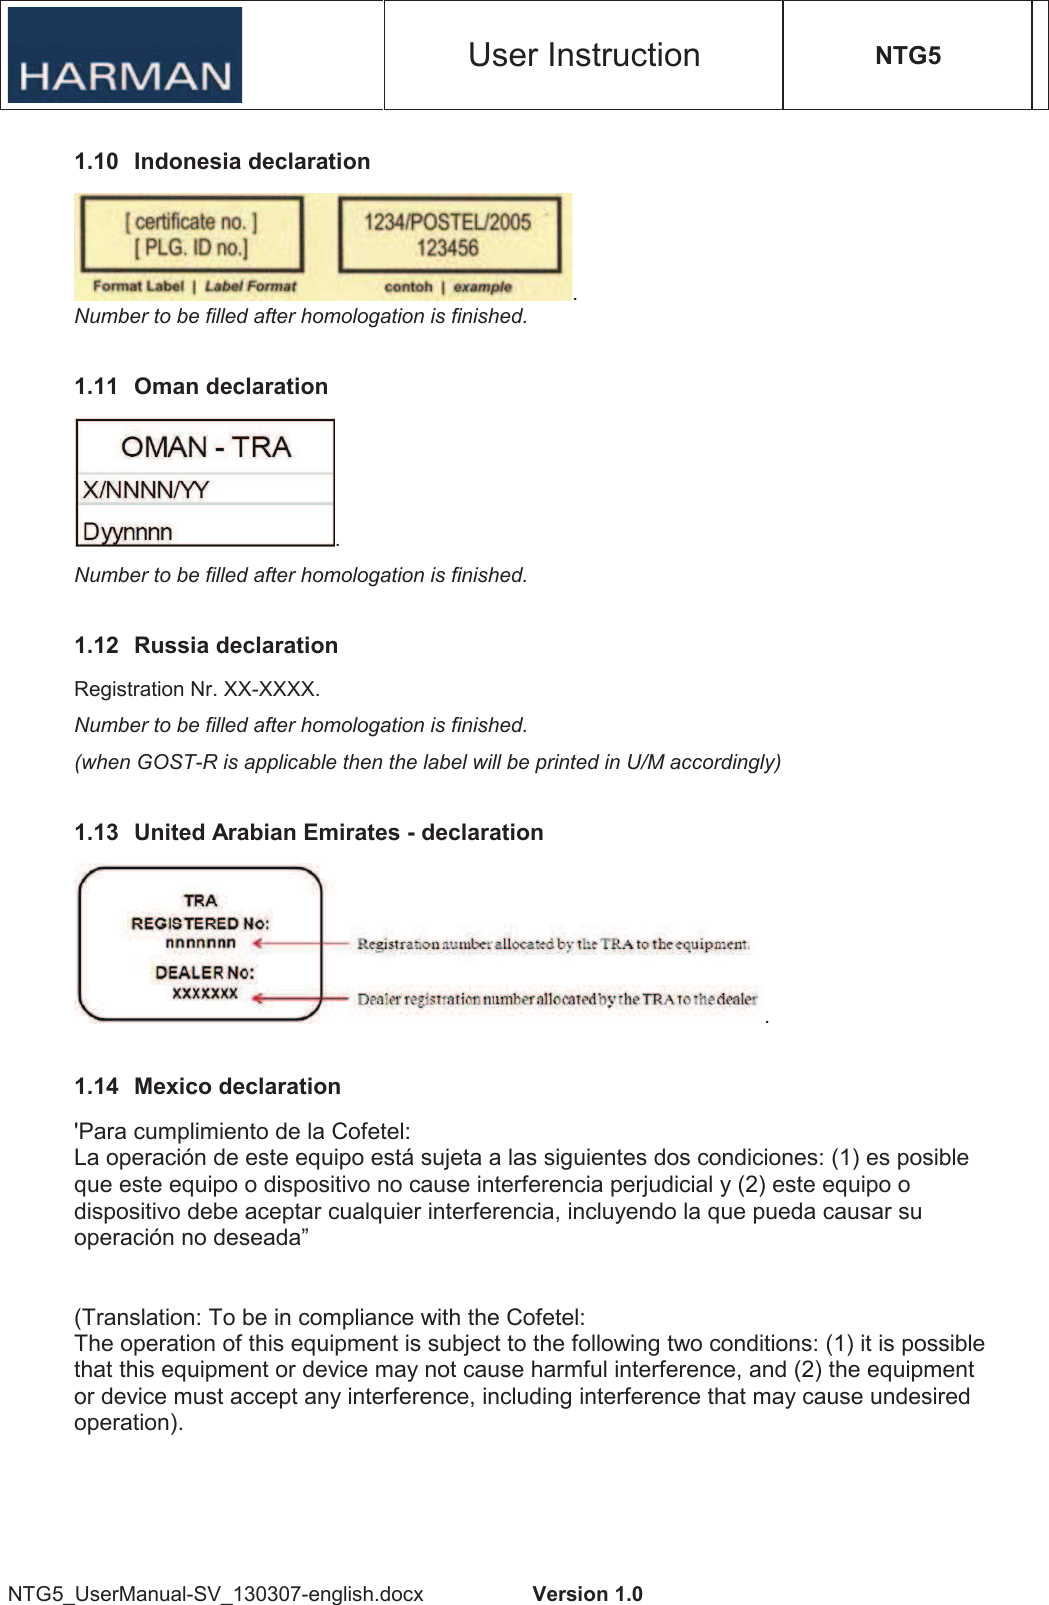 User Instruction NTG5 NTG5_UserManual-SV_130307-english.docx  Version 1.0 1.10  Indonesia declaration . Number to be filled after homologation is finished. 1.11  Oman declaration . Number to be filled after homologation is finished. 1.12  Russia declaration Registration Nr. XX-XXXX. Number to be filled after homologation is finished. (when GOST-R is applicable then the label will be printed in U/M accordingly) 1.13  United Arabian Emirates - declaration . 1.14  Mexico declaration &apos;Para cumplimiento de la Cofetel: La operación de este equipo está sujeta a las siguientes dos condiciones: (1) es posible que este equipo o dispositivo no cause interferencia perjudicial y (2) este equipo o dispositivo debe aceptar cualquier interferencia, incluyendo la que pueda causar su operación no deseada” (Translation: To be in compliance with the Cofetel: The operation of this equipment is subject to the following two conditions: (1) it is possible that this equipment or device may not cause harmful interference, and (2) the equipment or device must accept any interference, including interference that may cause undesired operation). 